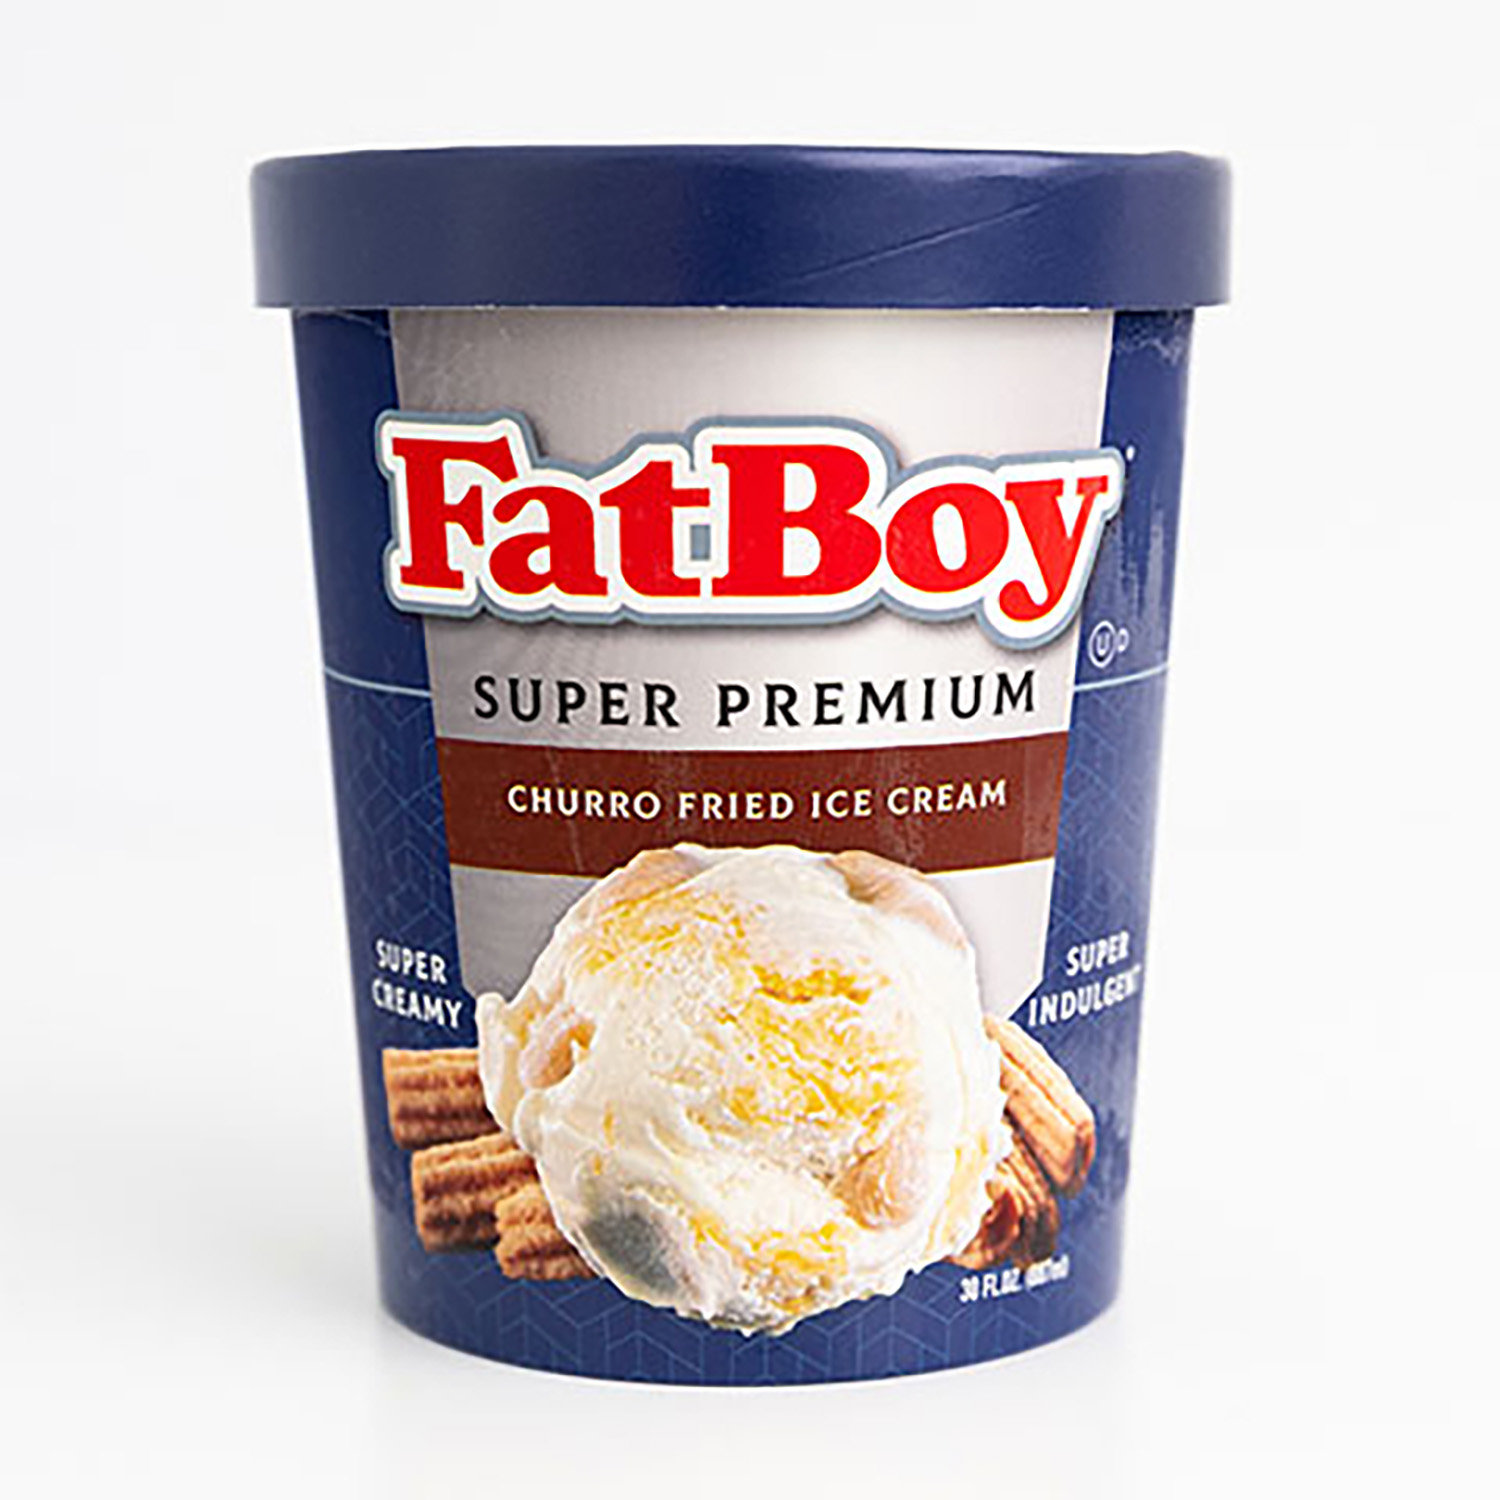 Fatboy Churro Fried Icecream